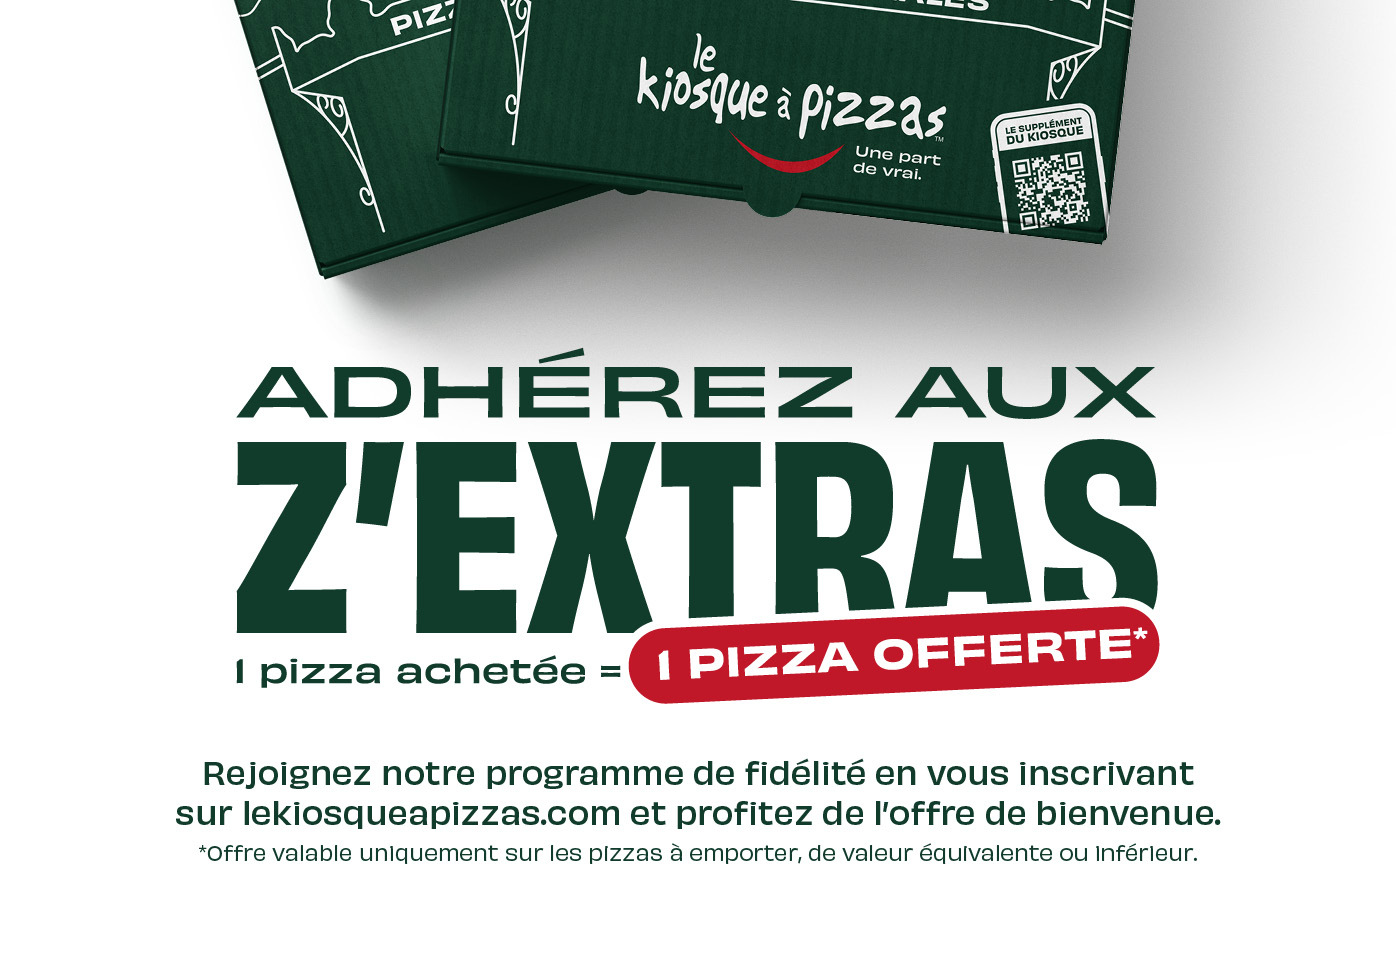 Les Zextras du kiosque à pizzas